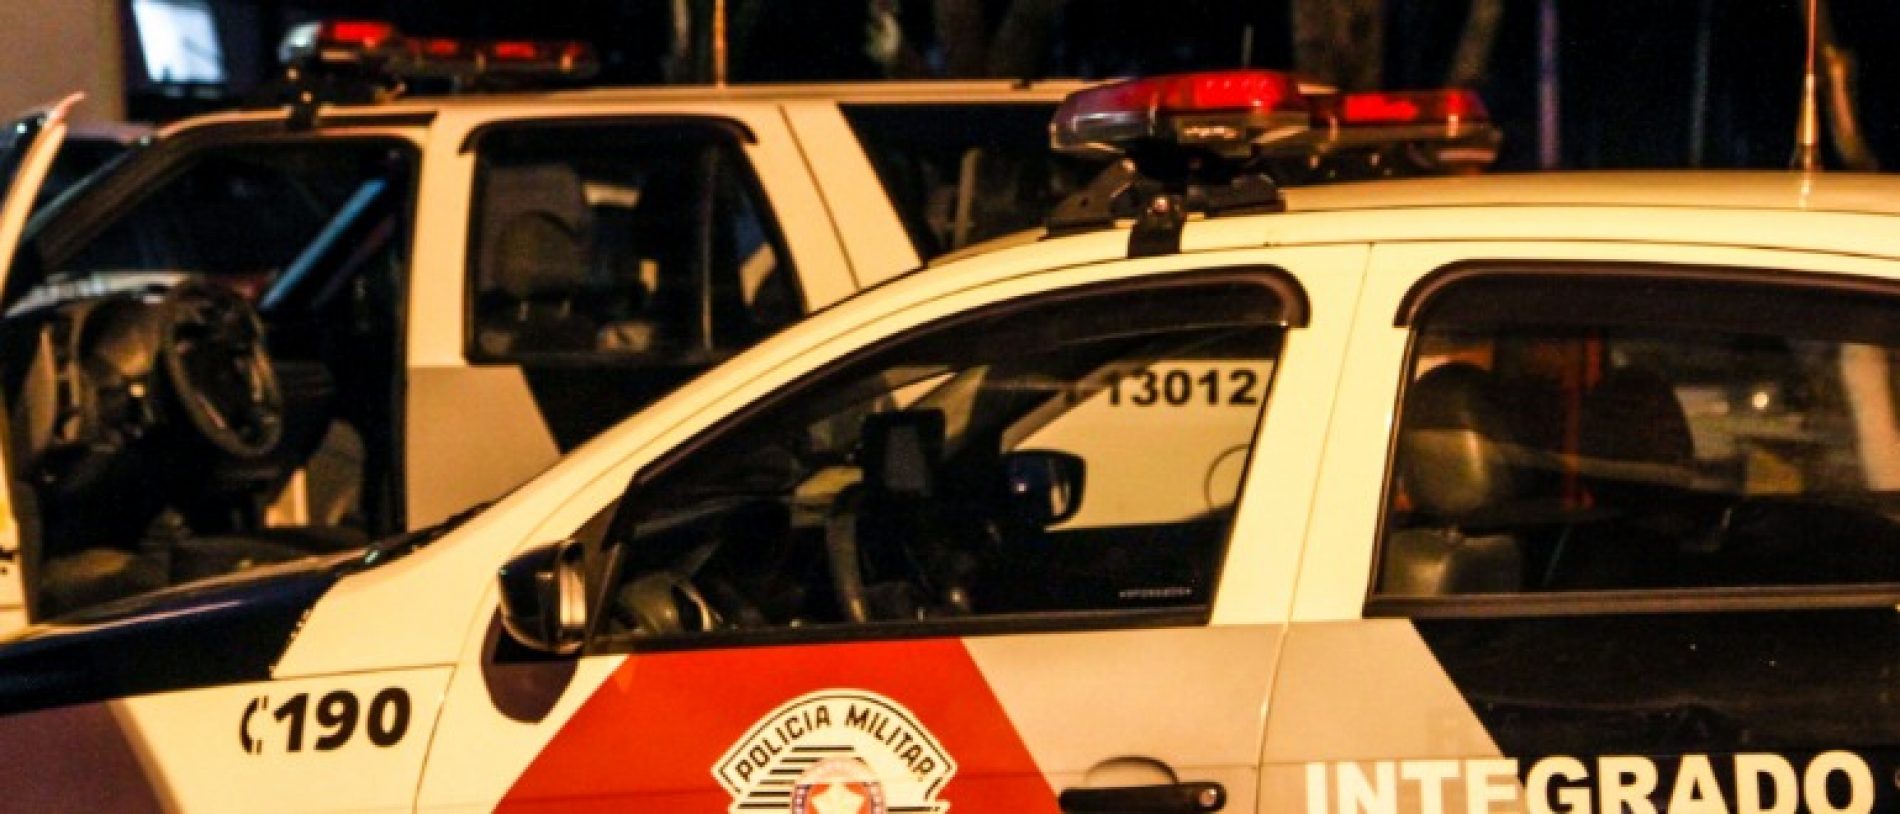 BARRETOS: Homem é preso após furtar celular em loja no centro da cidade